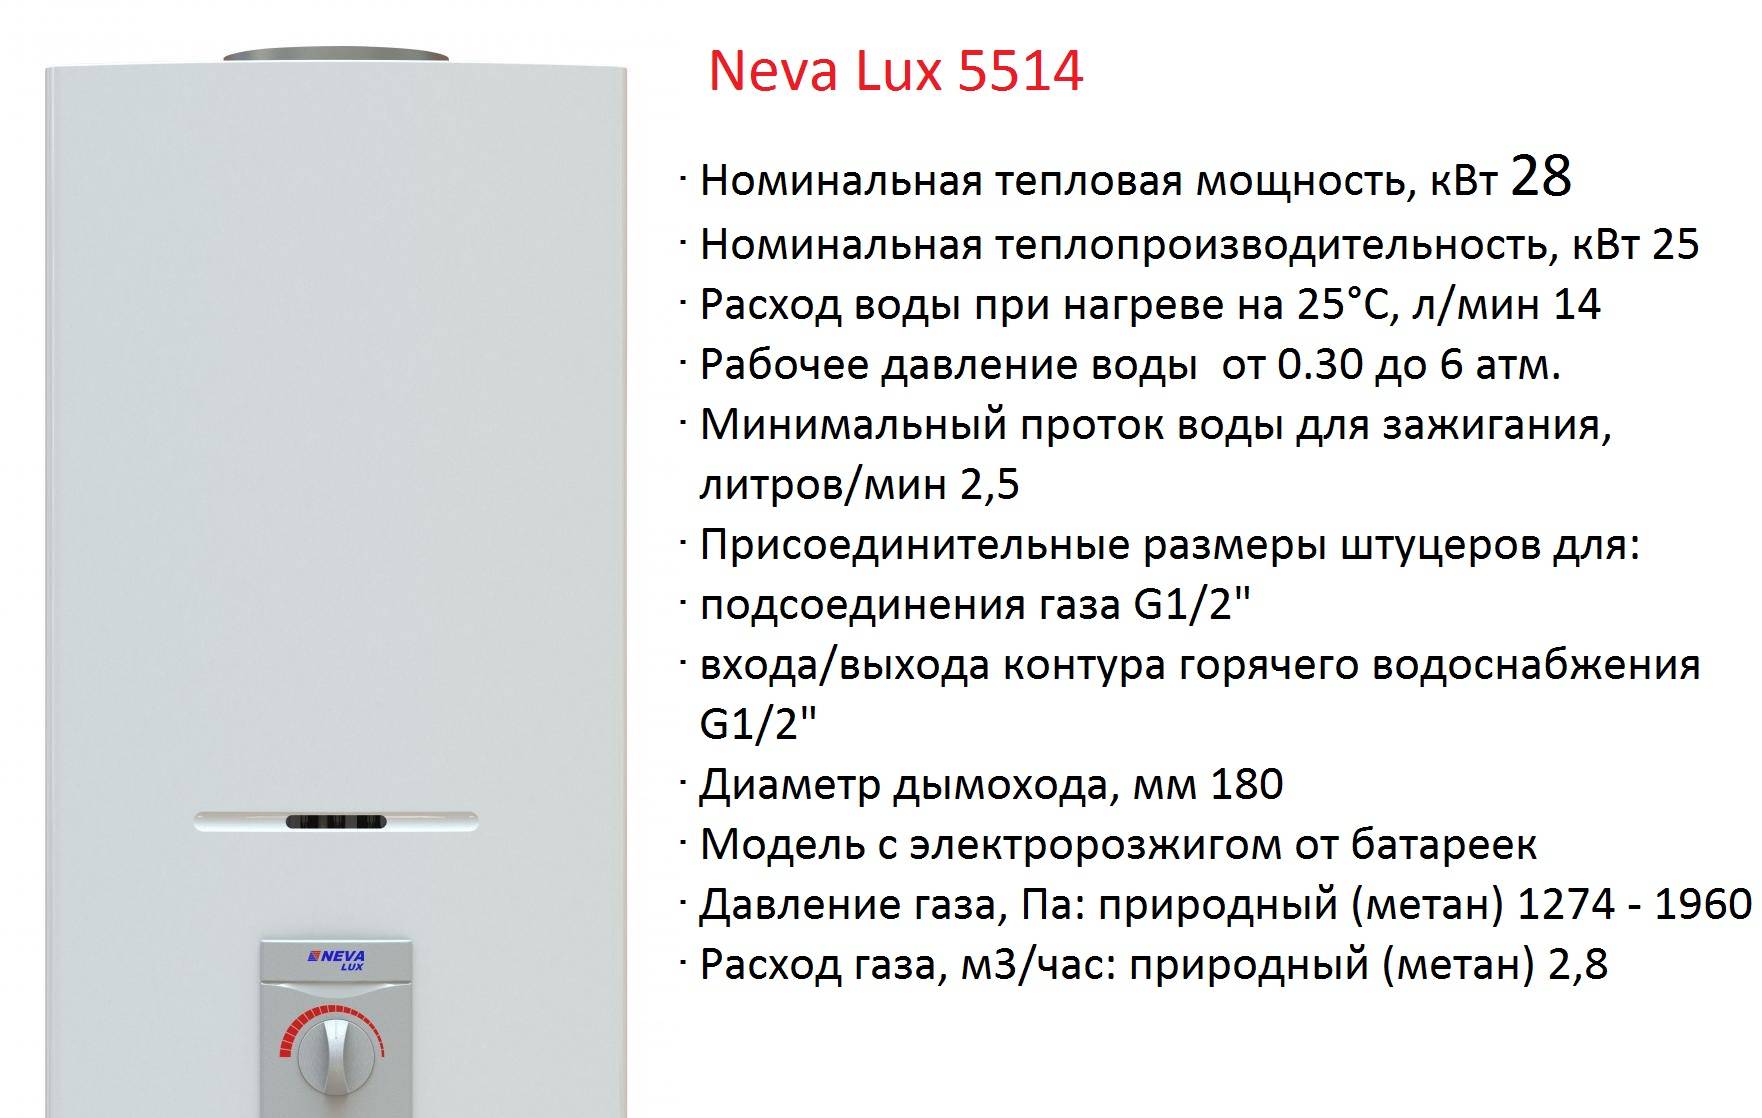 Общие сведения об отопительных котлах Neva Lux